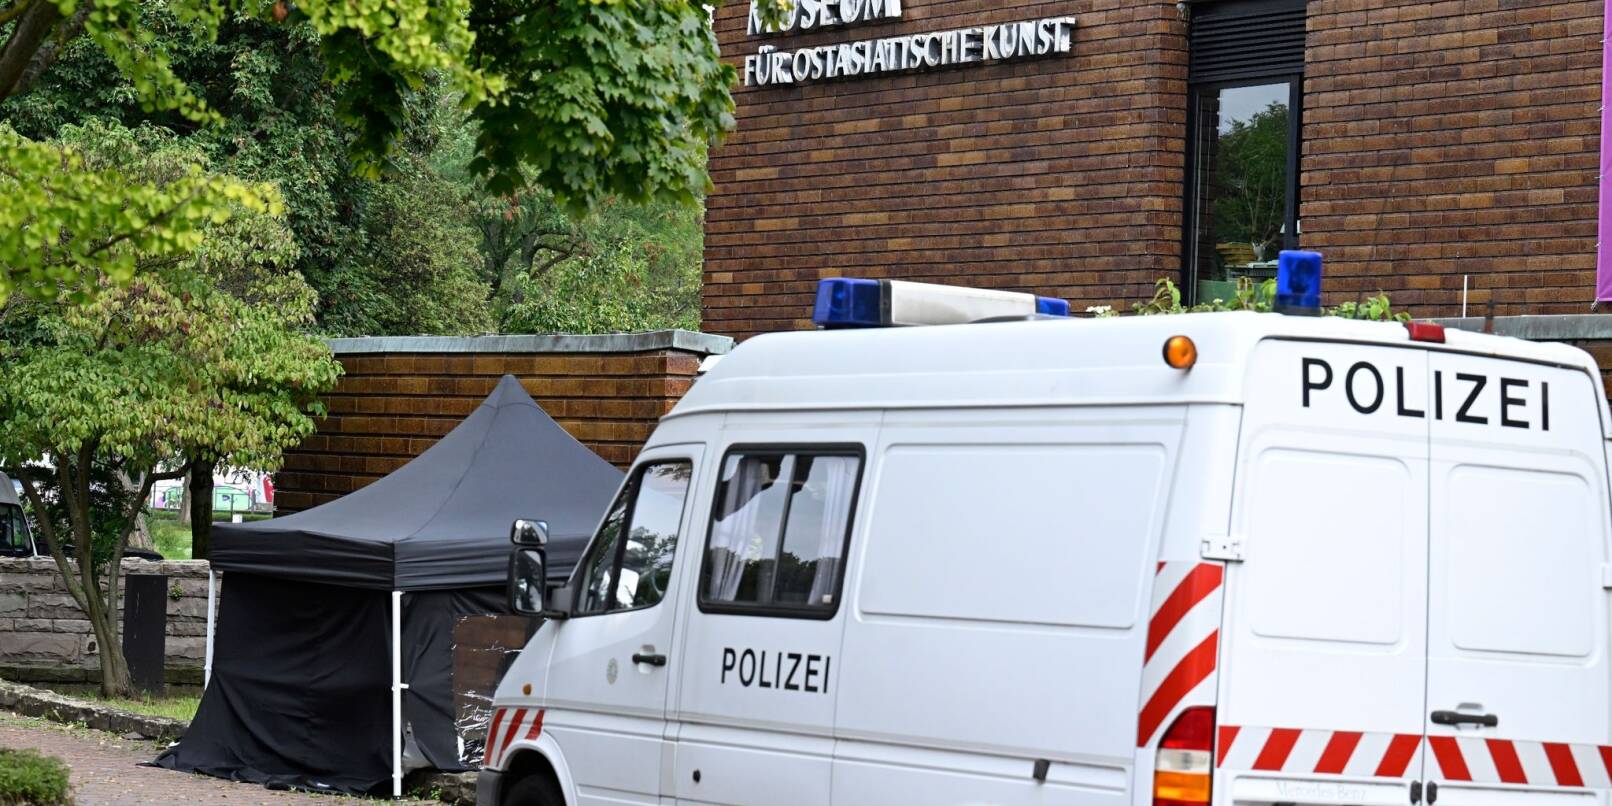 Die Spurensicherung der Polizei am Museum für Ostasiatische Kunst in Köln.